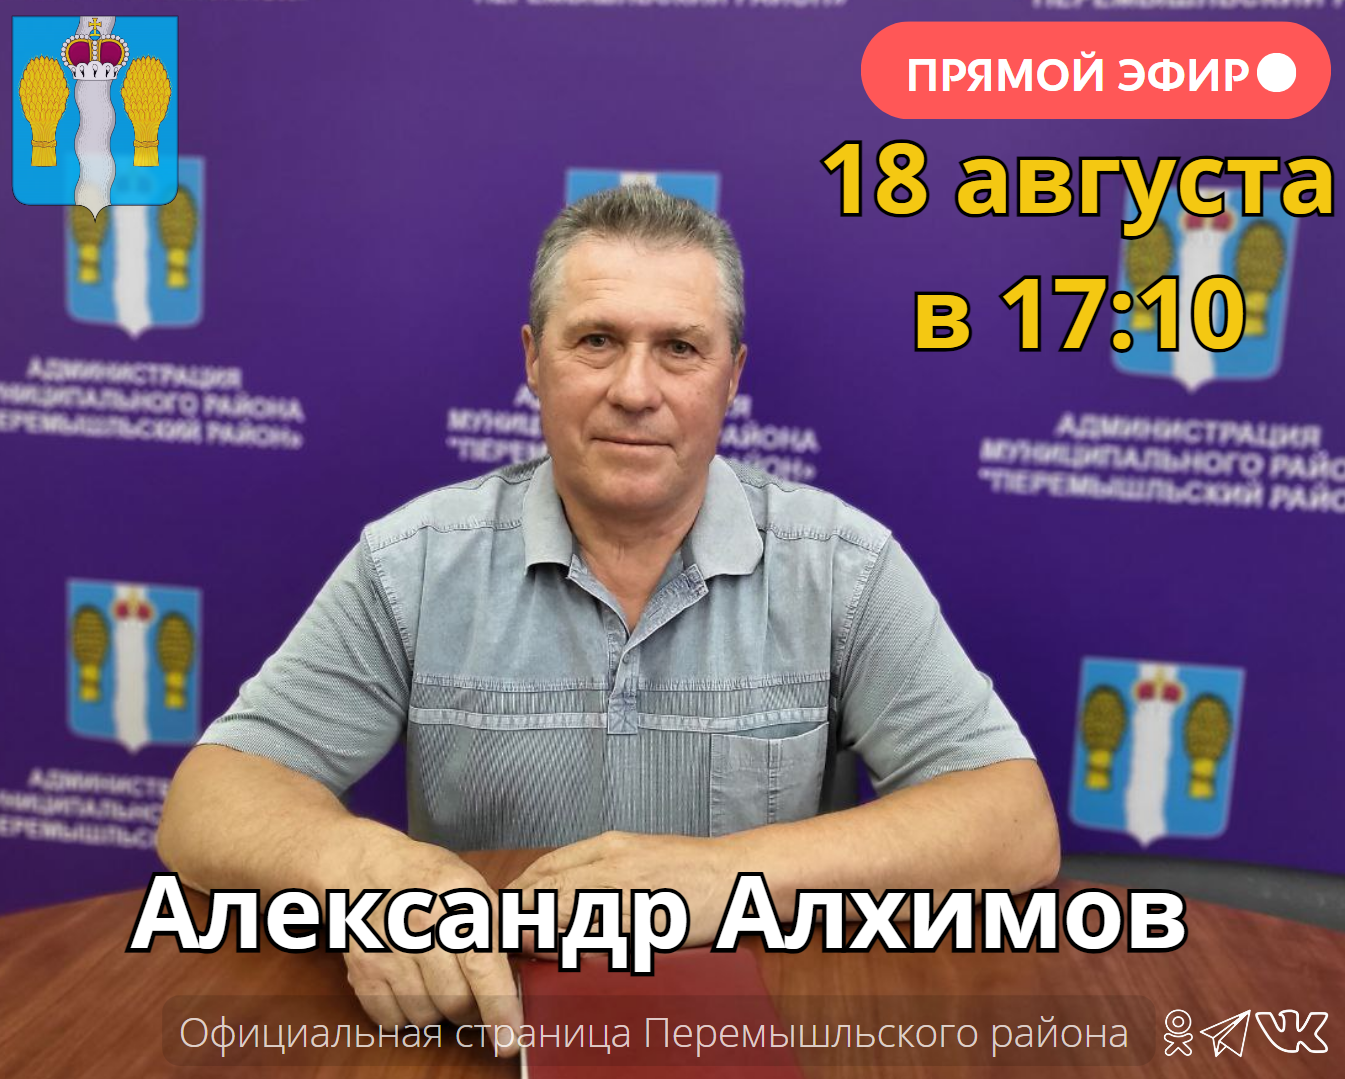 Прямой эфир с заместителем Главы администрации Александром Алхимовым.